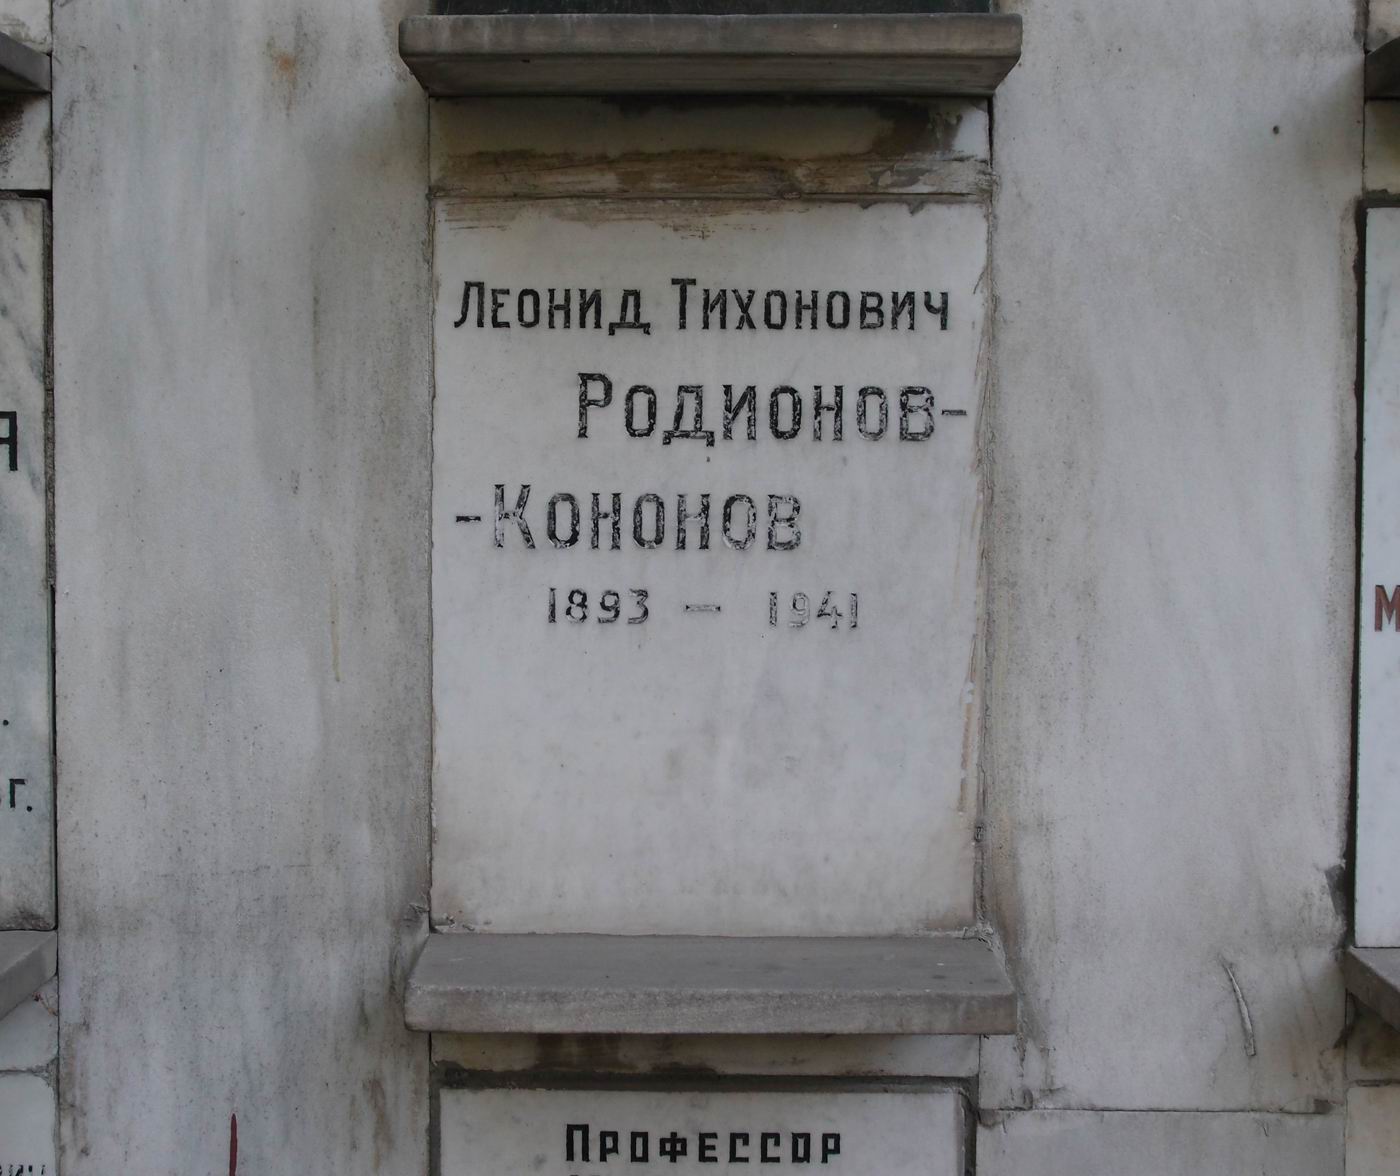 Плита на нише Родионова-Кононова Л.Т. (1893-1941), на Новодевичьем кладбище (колумбарий [92]-2-2).